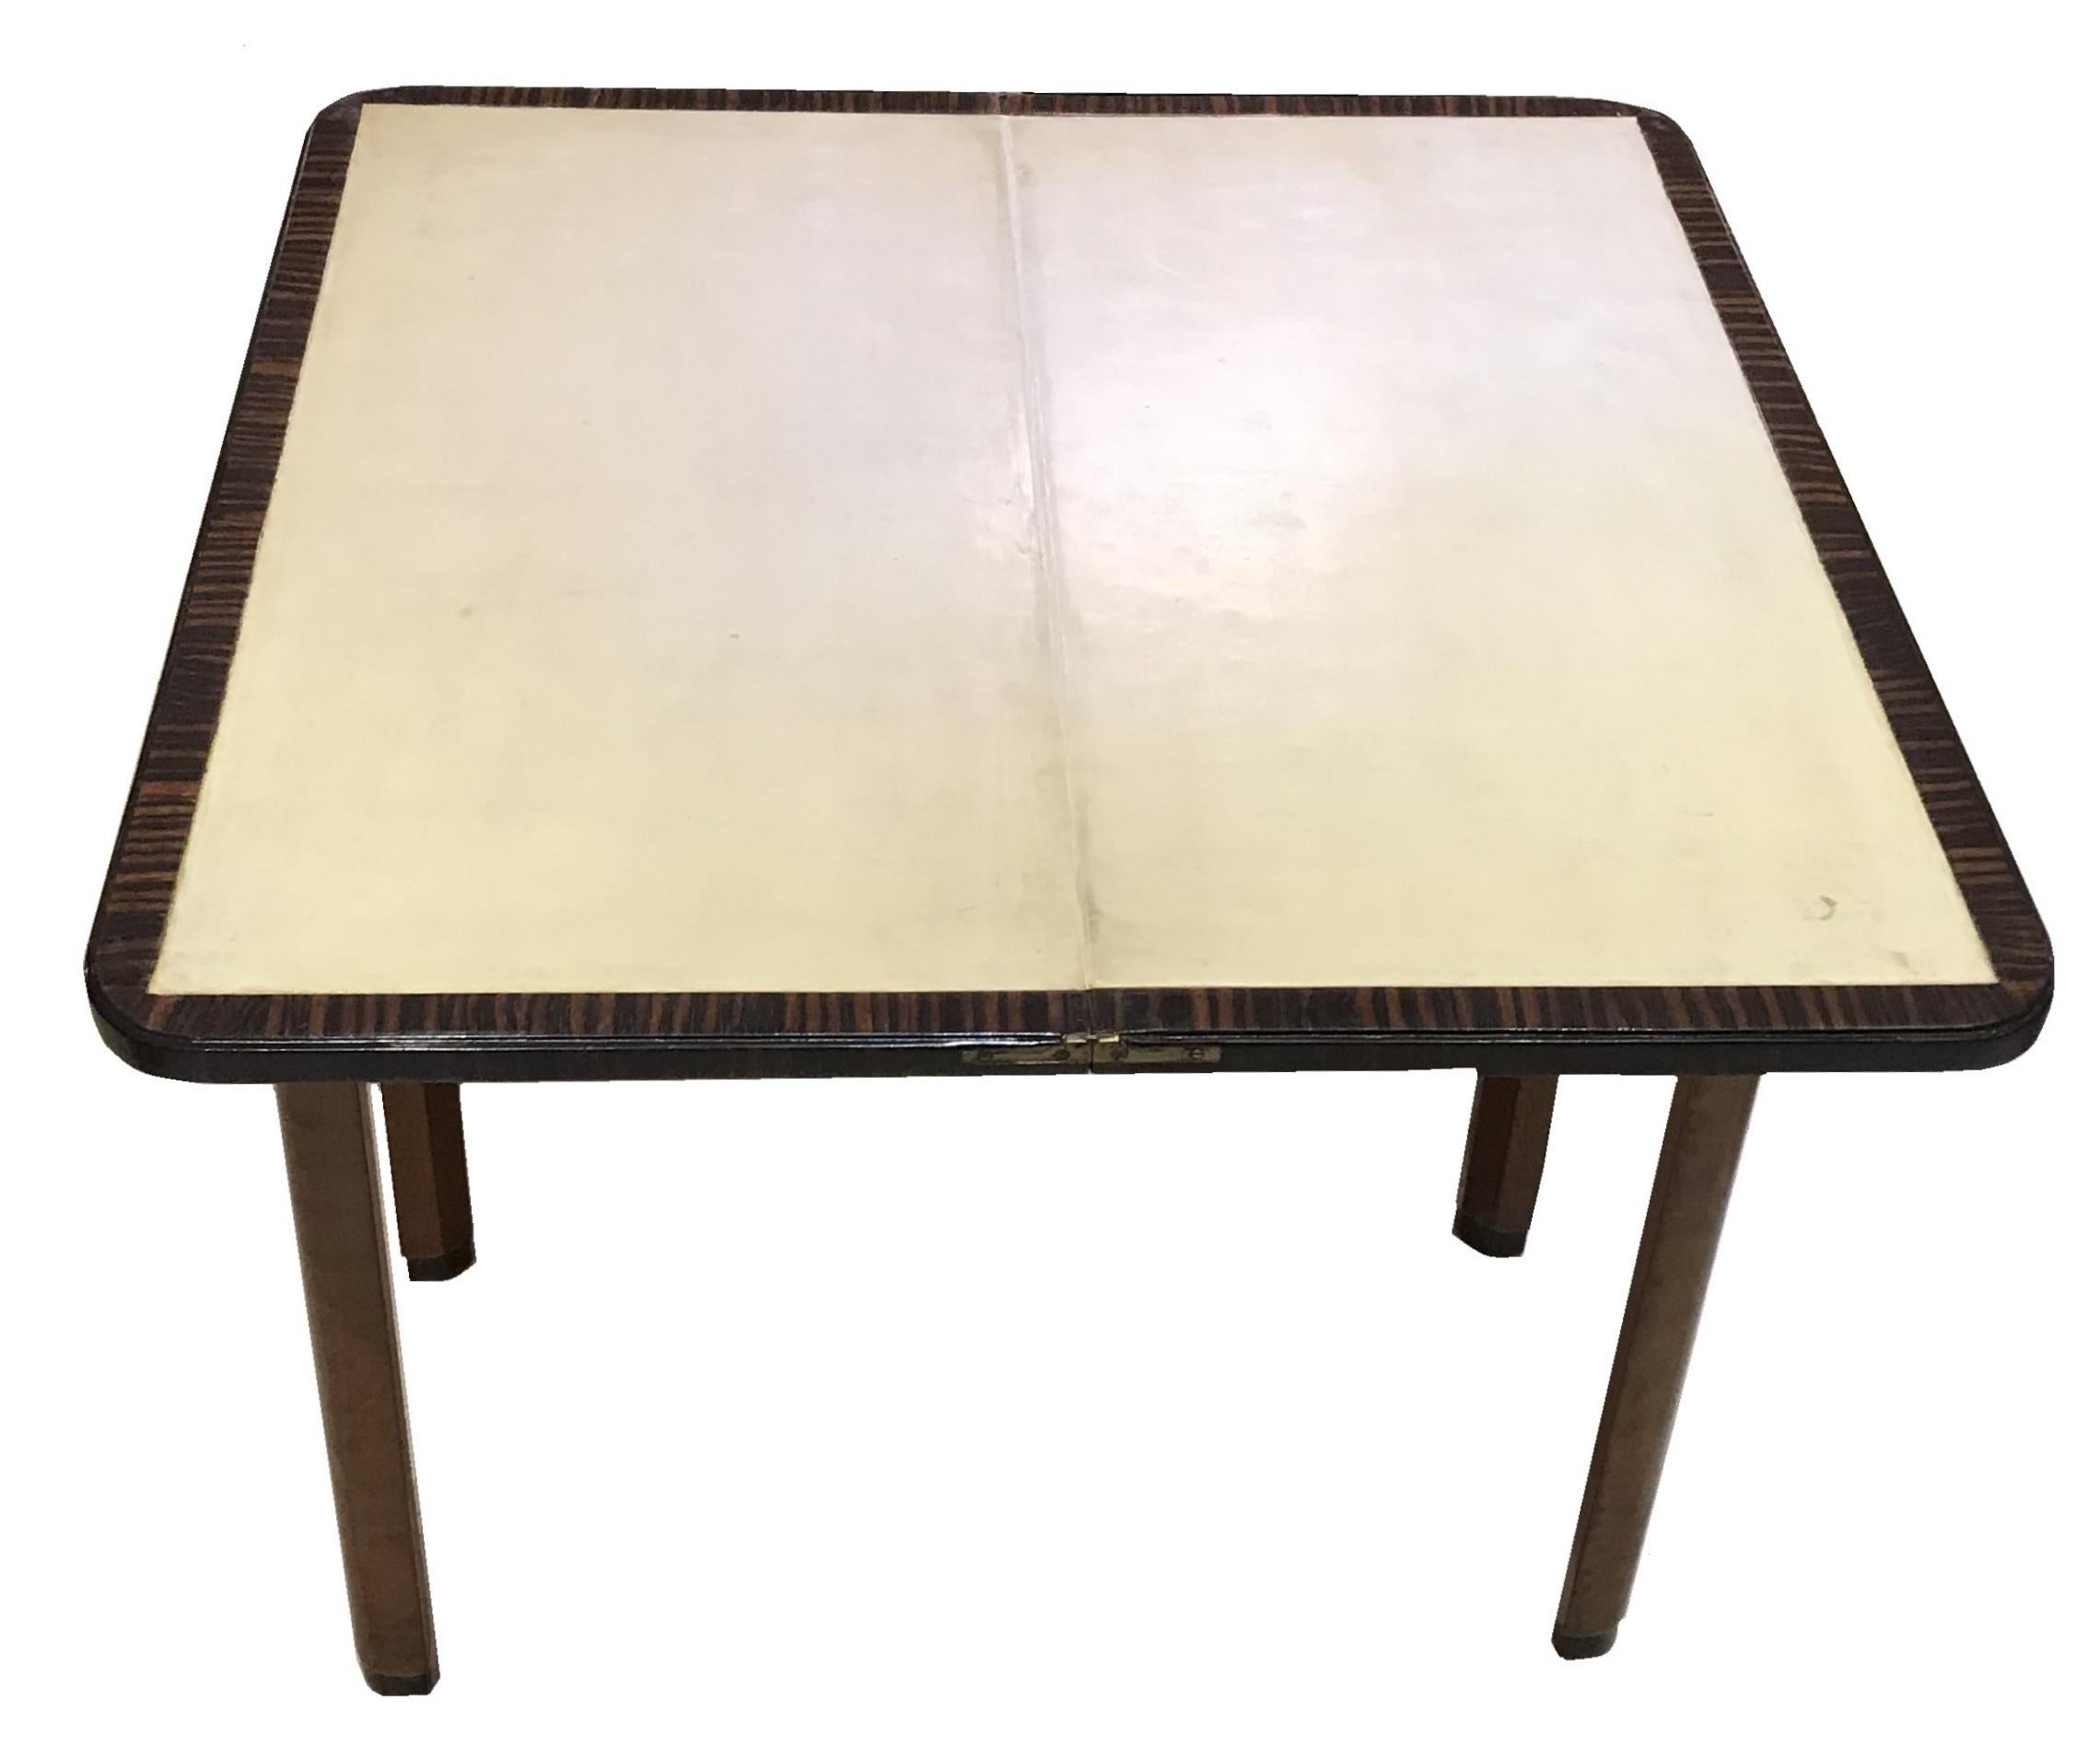 Table de lecture en bois et cuir parcheminé,

Année : 1920
Pays : Français
Bois et parchemin (cuir)
Il s'agit d'une table de salle à manger élégante et sophistiquée.
Vous voulez vivre des années dorées, c'est la table de salle à manger qu'il vous